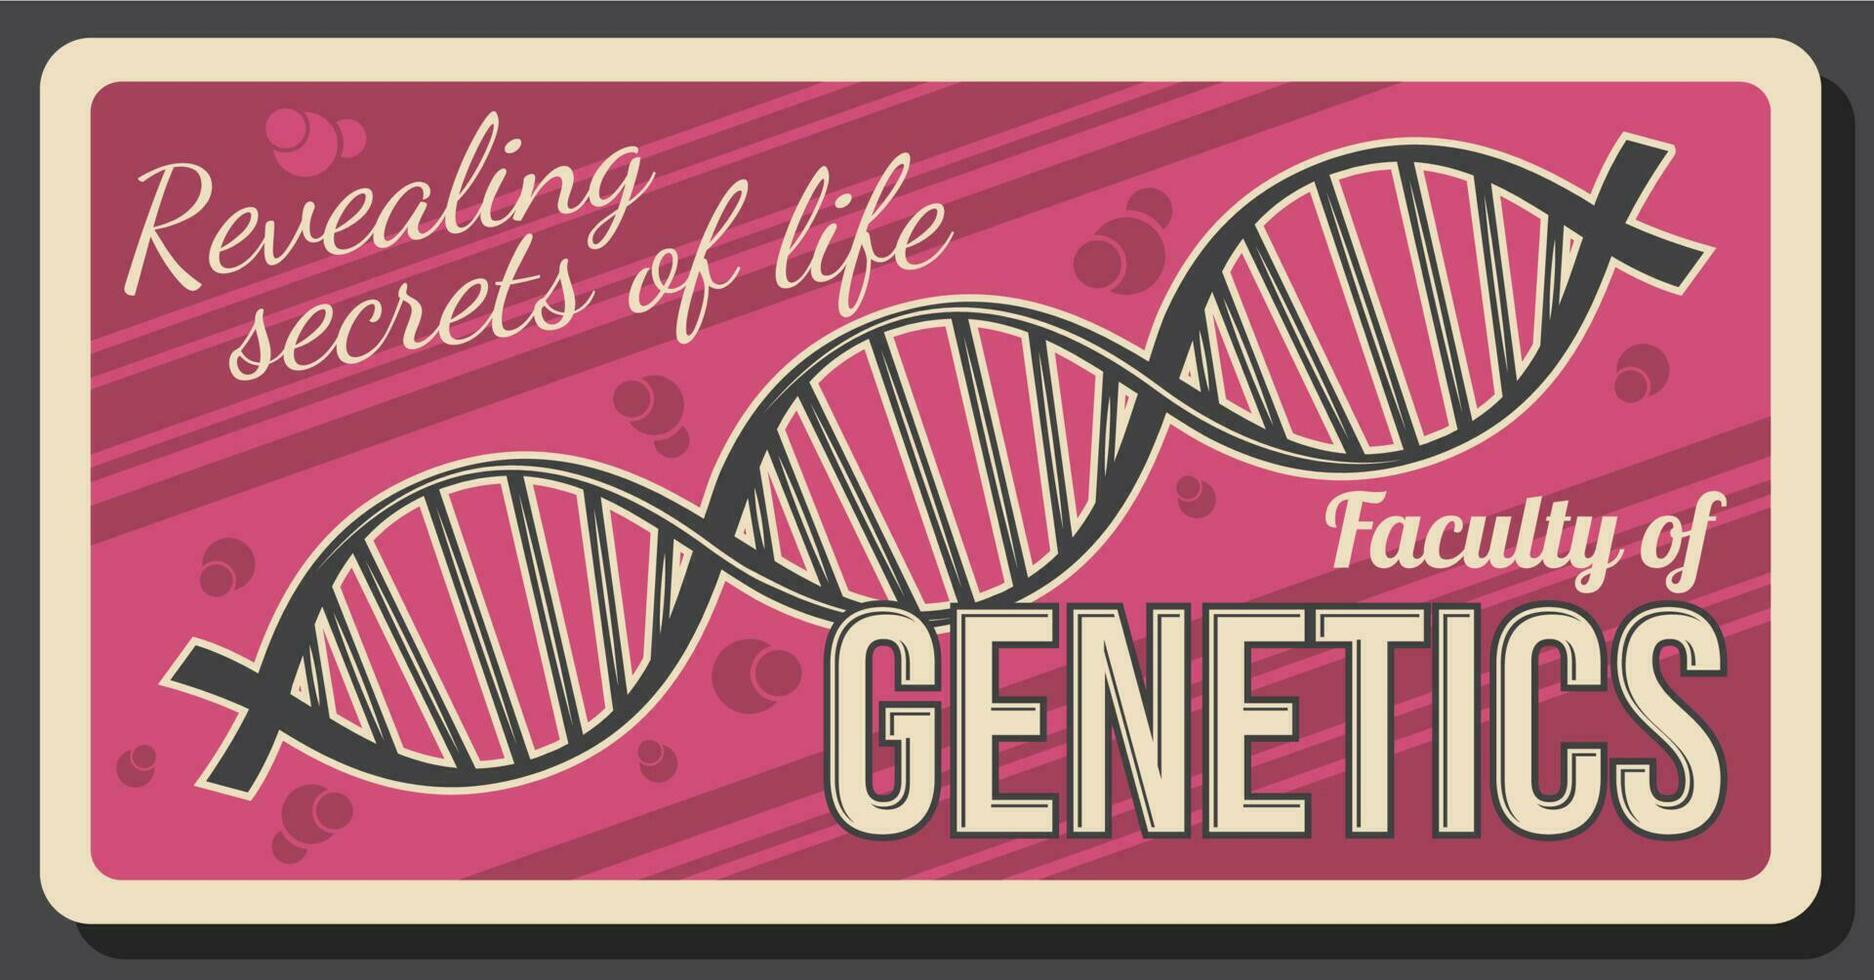 genética educación facultad, adn genoma vector